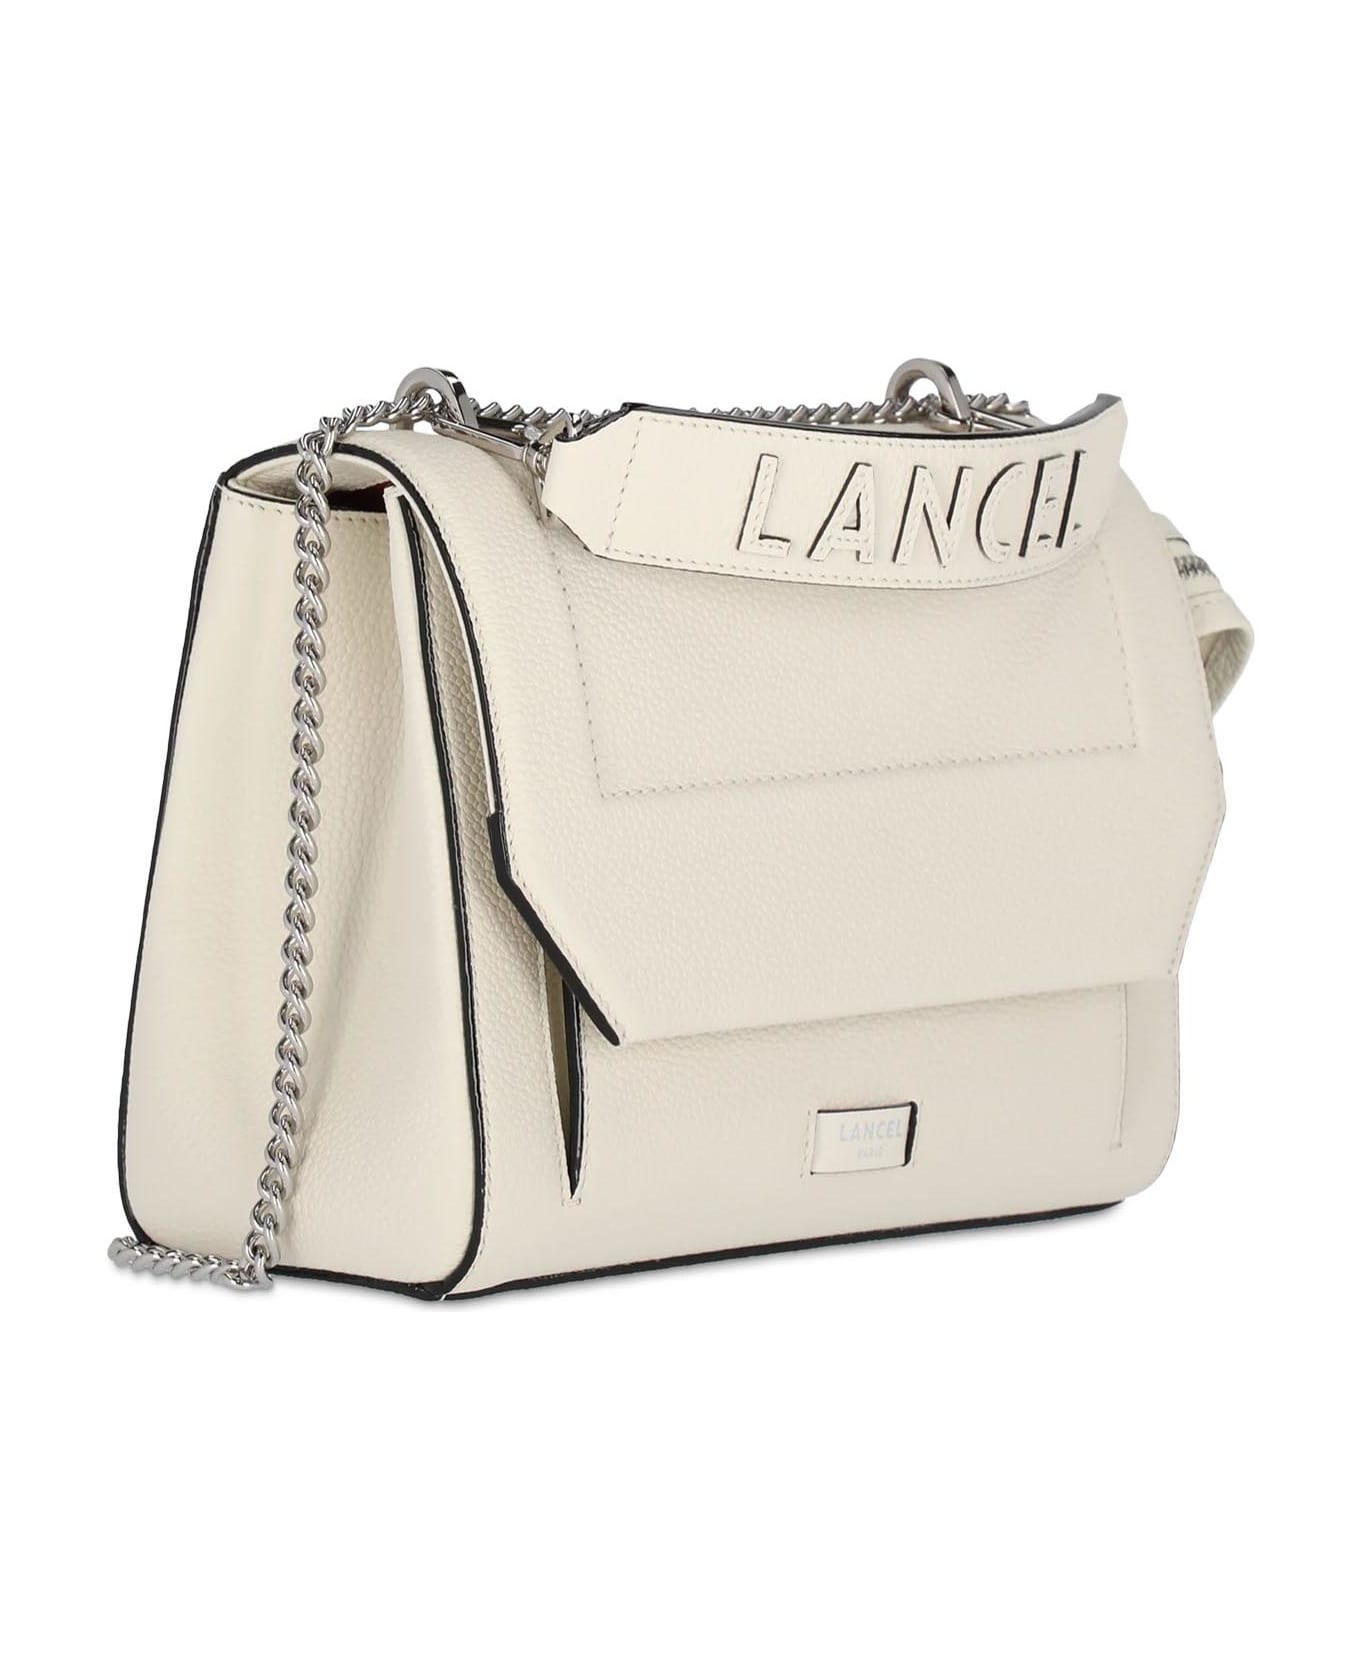 Lancel Camel Grained Leather Shoulder Bag - White